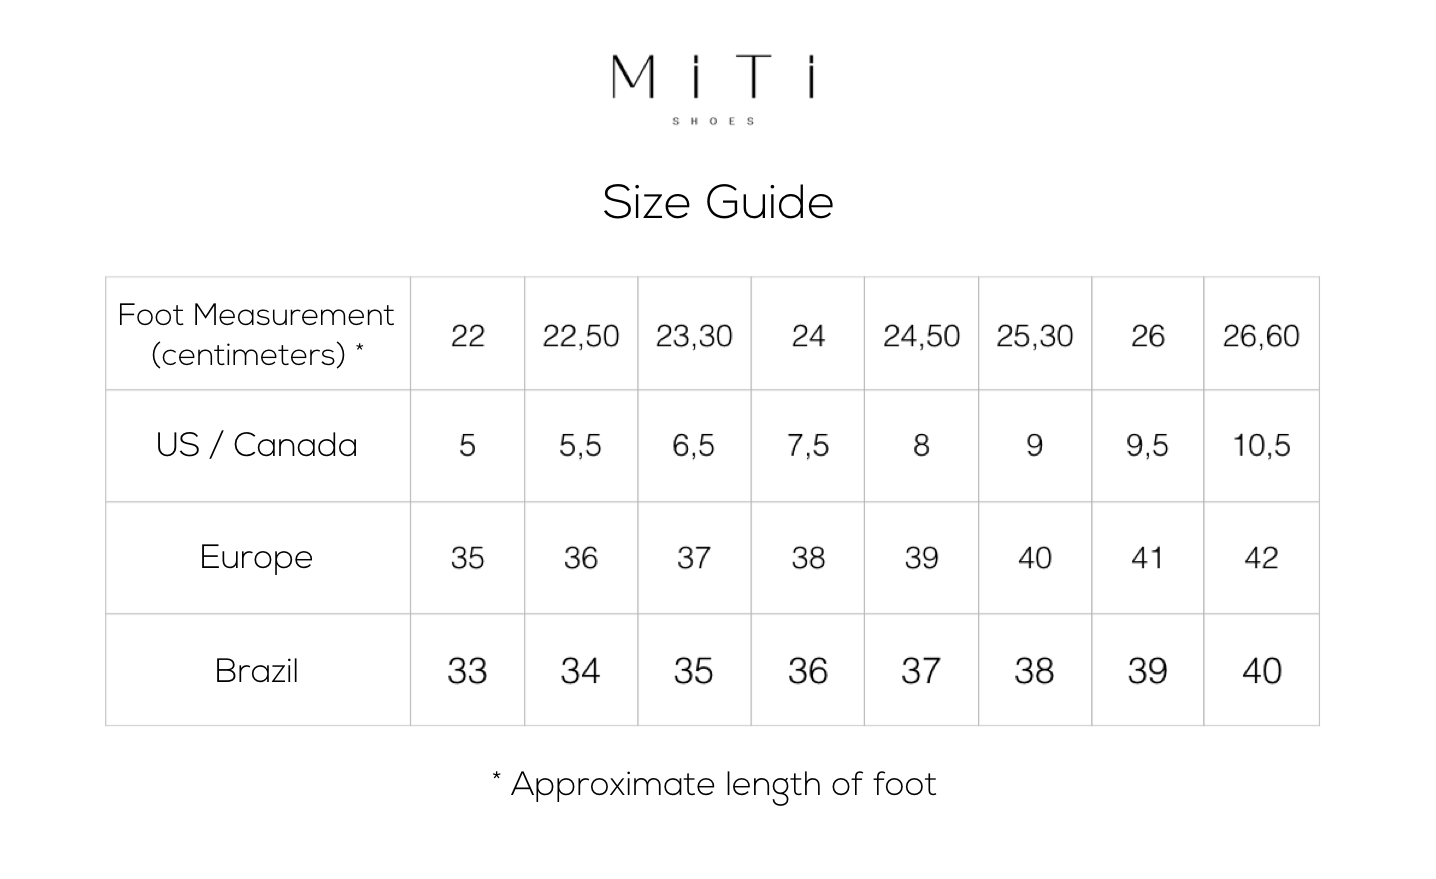 Tabela de medidas